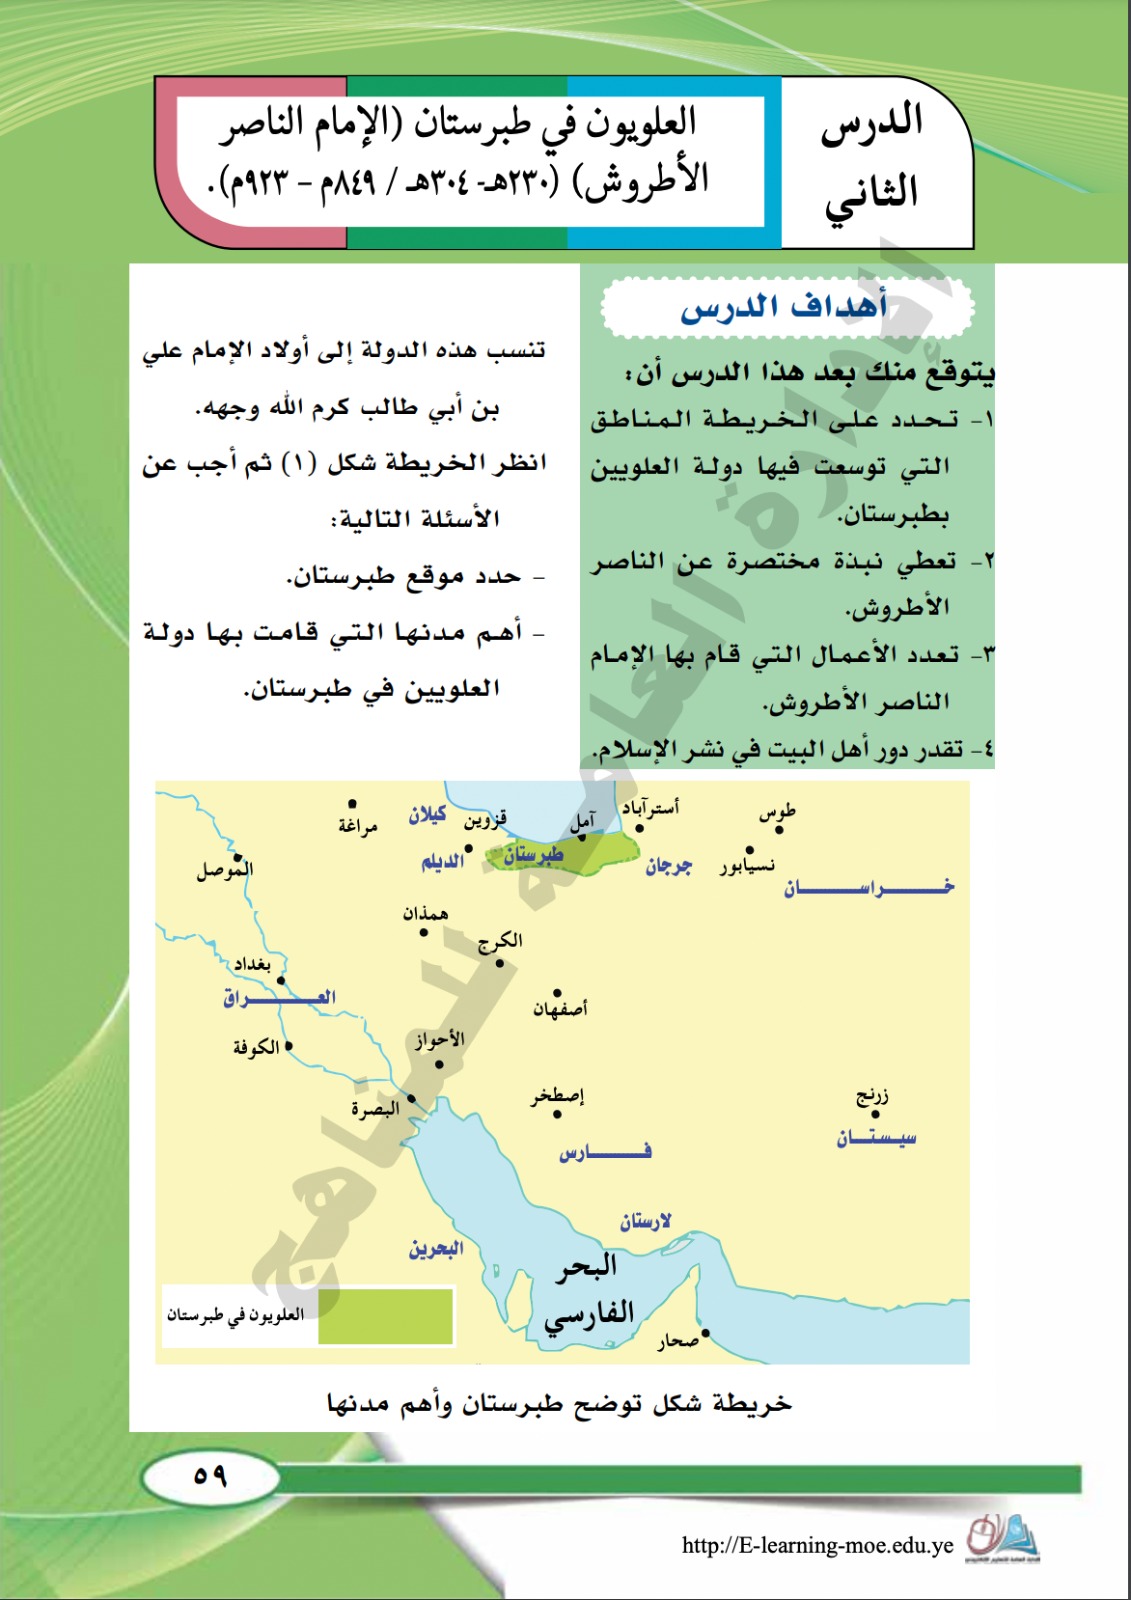 كتاب التاريخ للصف السادس بالمنهاج اليمني يستبدل اسم "الخليج العربي" بـ "البحر الفارسي"